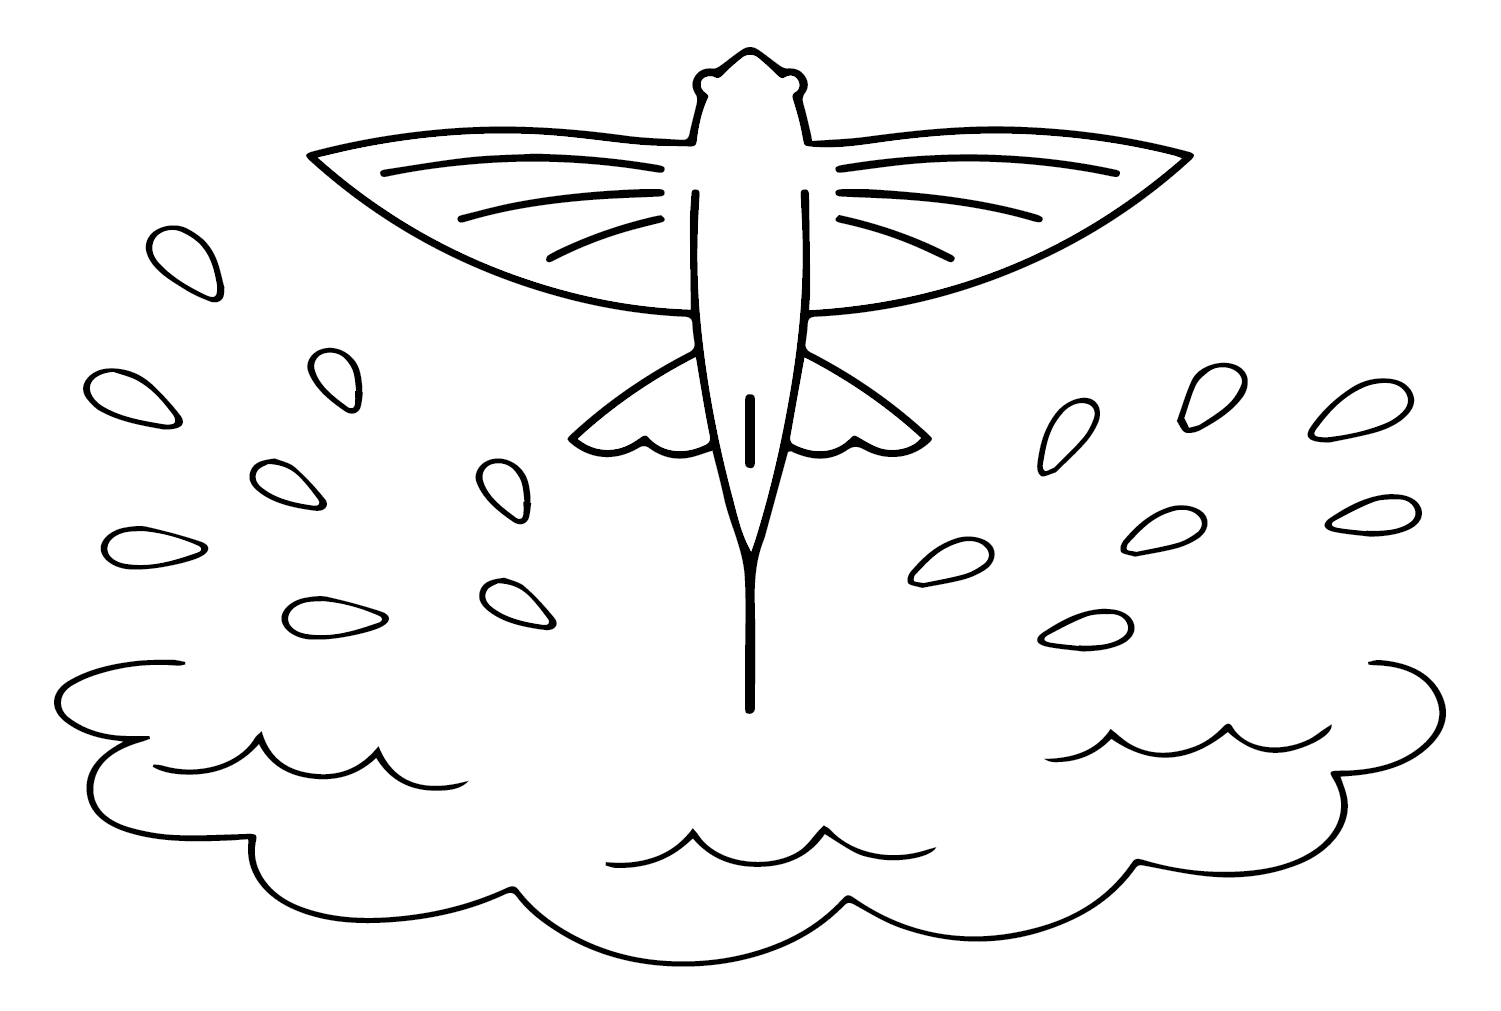 Dessiner un poisson volant à partir d'un poisson volant